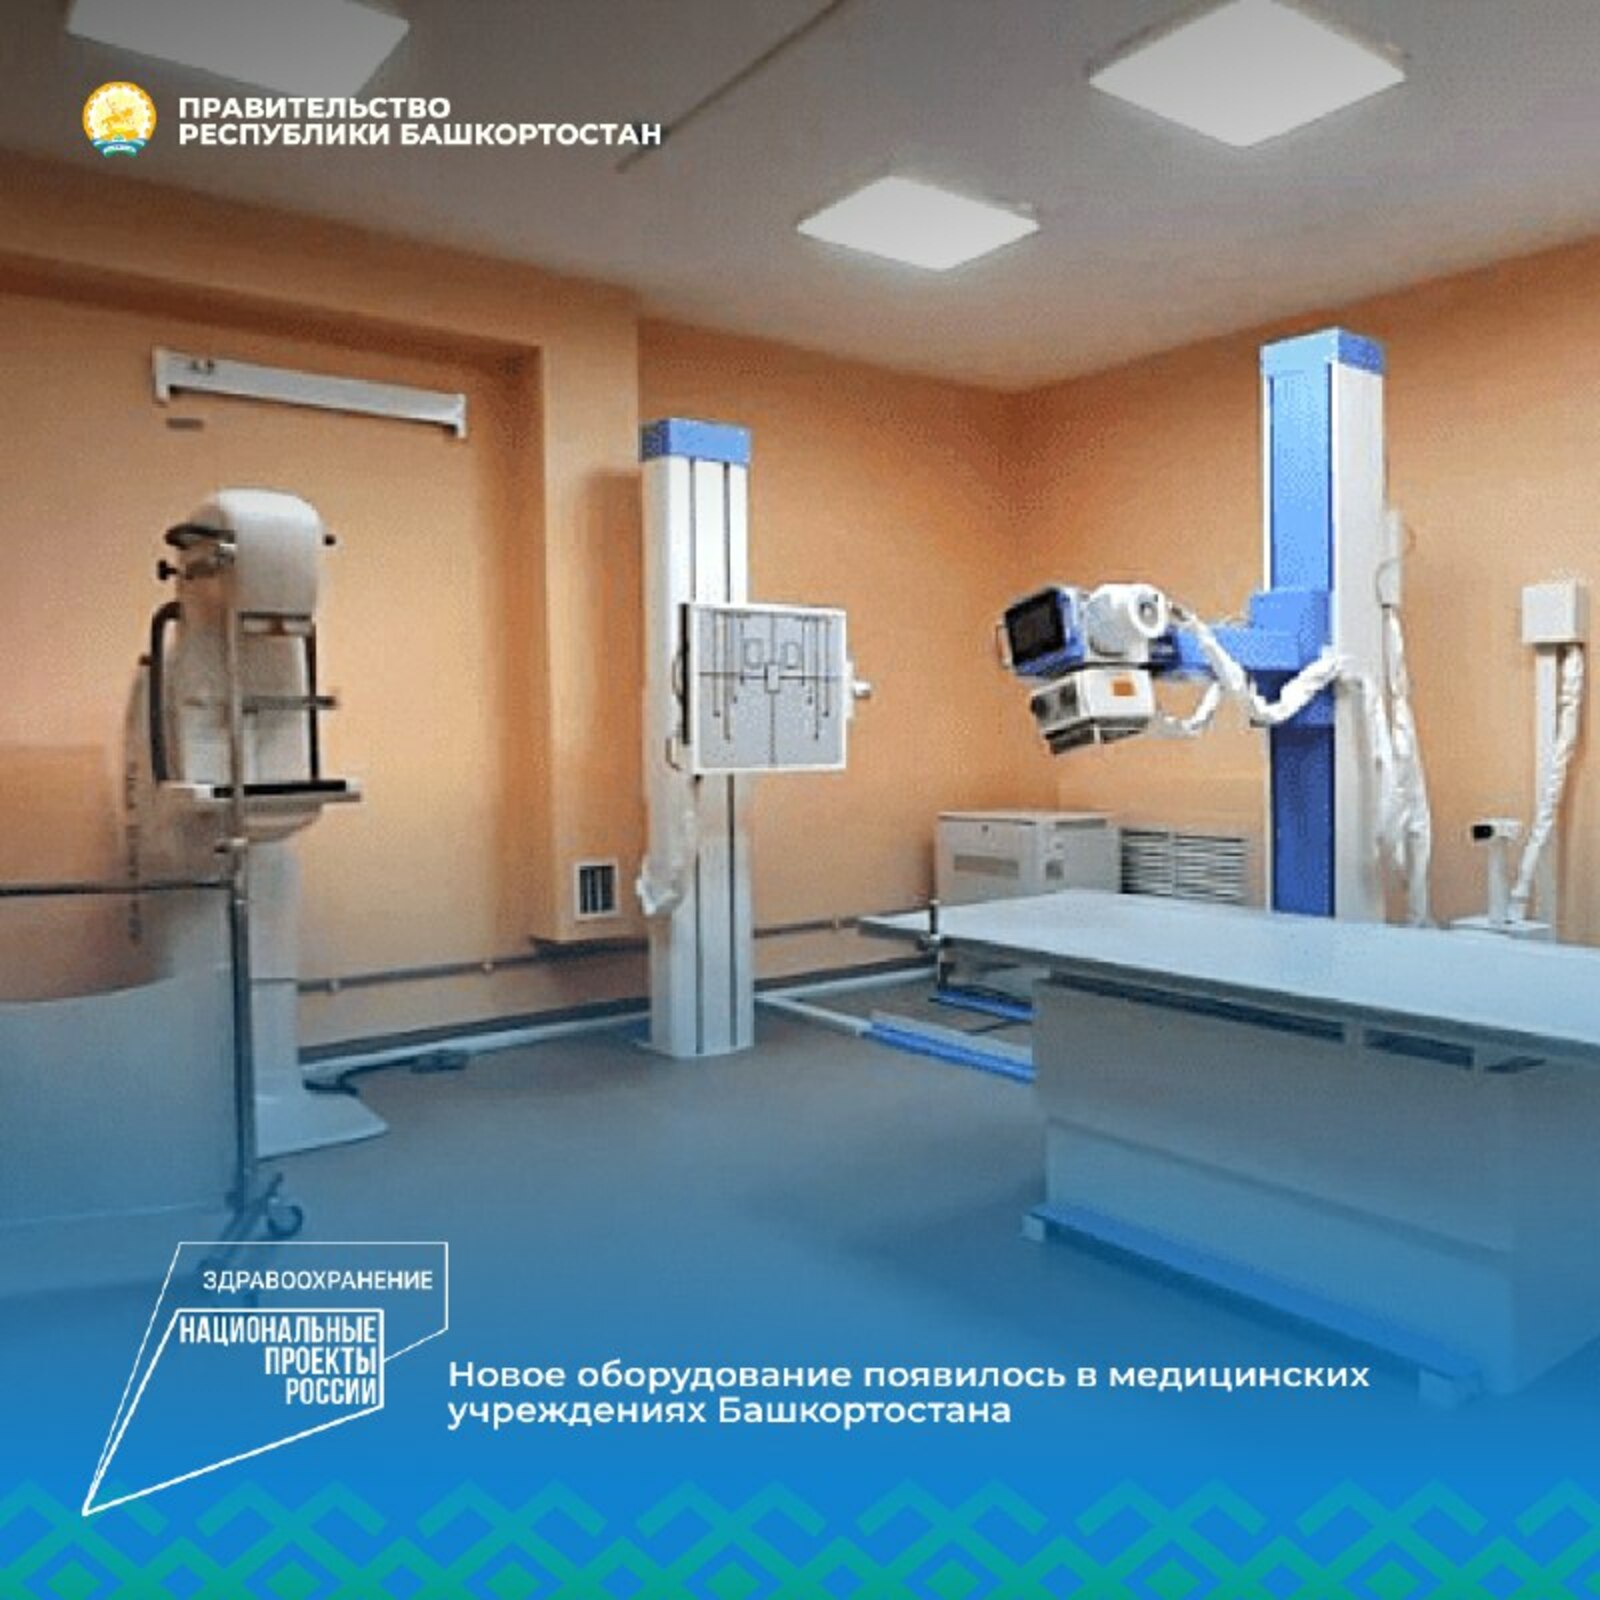 В одну из поликлиник Башкирии поступило оборудование для рентгена на 24 млн рублей